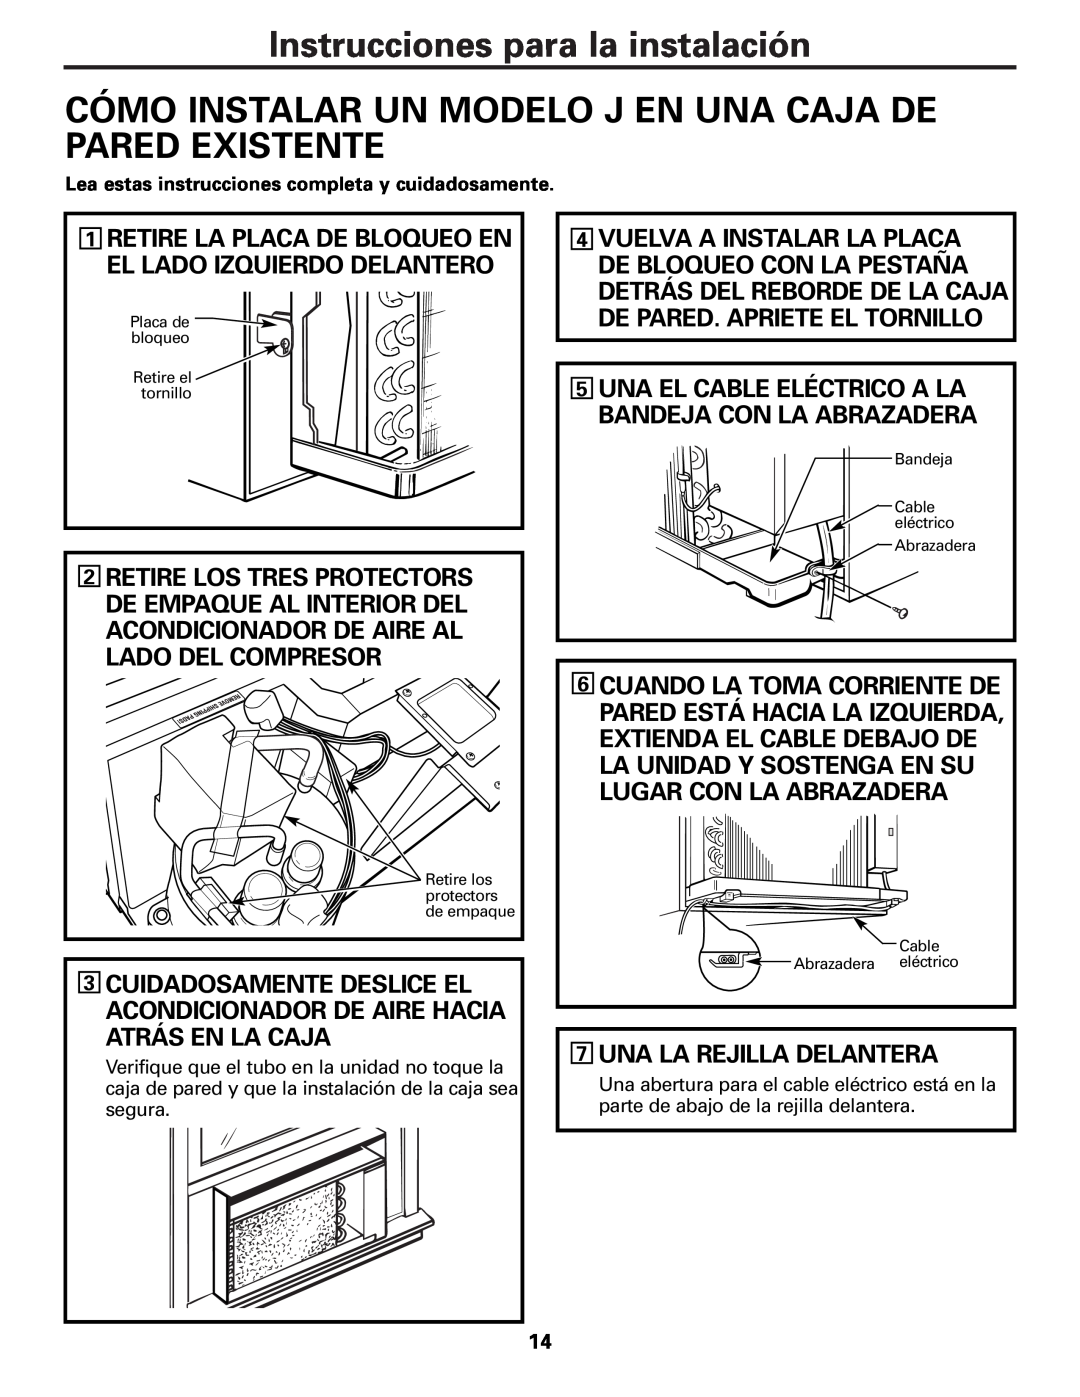 GE Cool Only installation instructions 7UNA LA REJILLA DELANTERA, Instrucciones para la instalación 